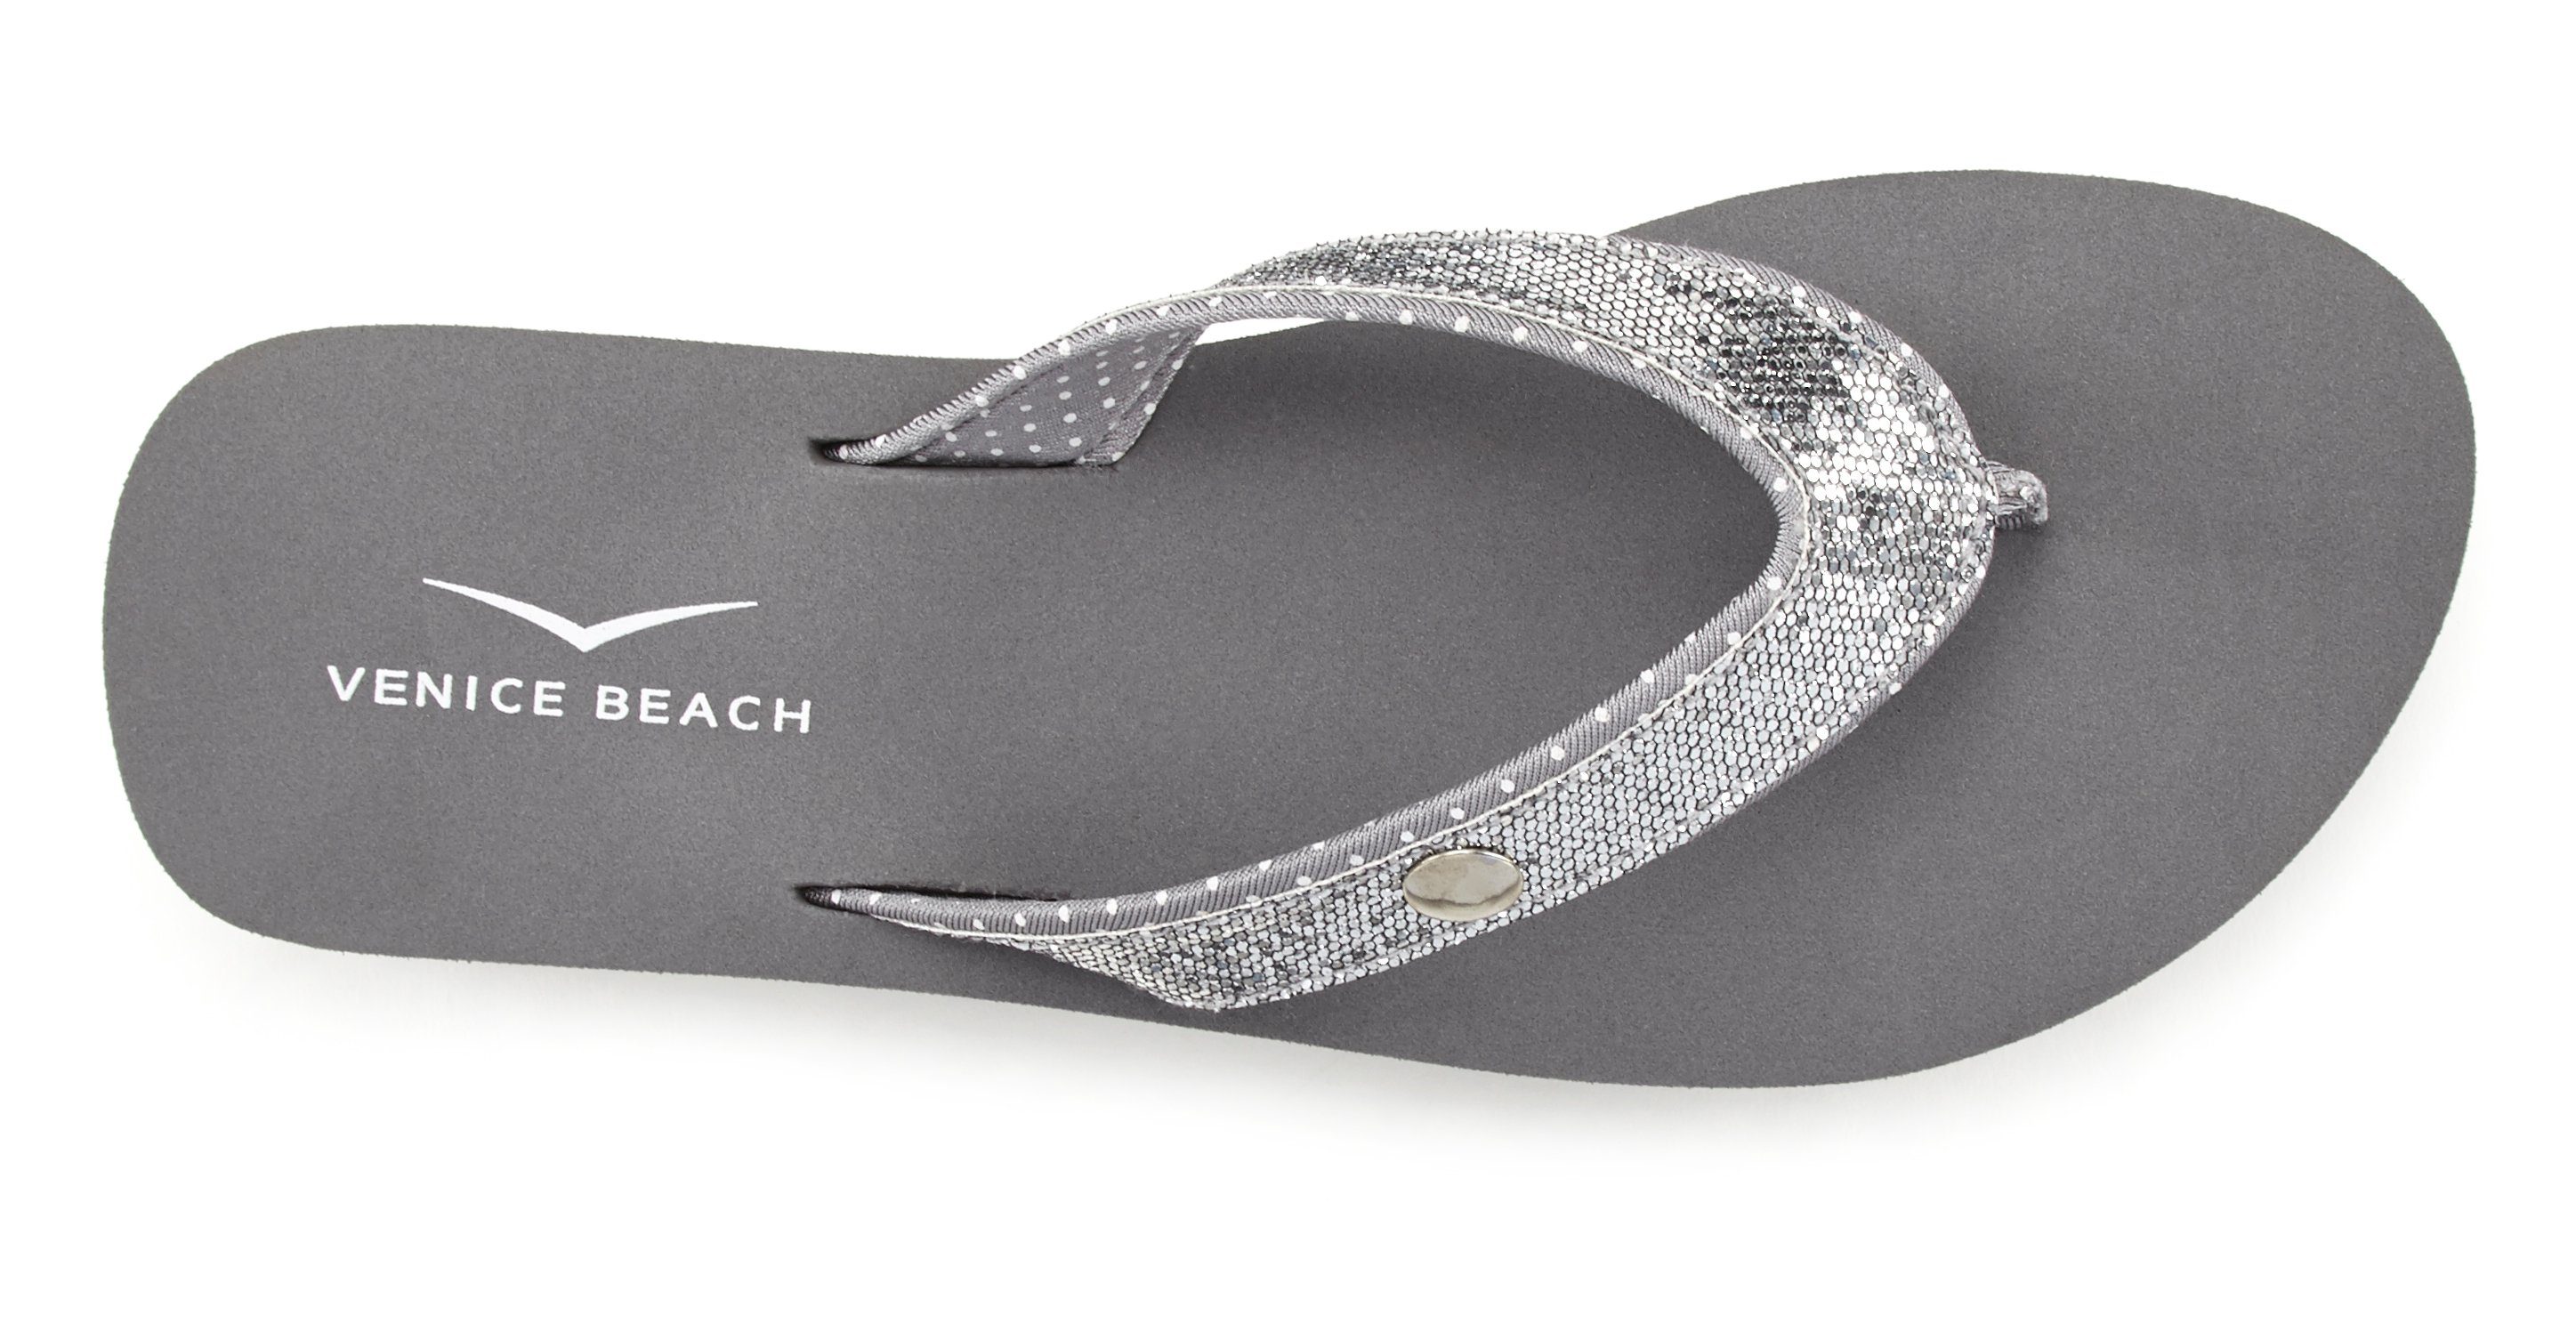 Venice Beach Badezehentrenner Glitzerband Badeschuh Pantolette, VEGAN grau mit Sandale, ultraleicht